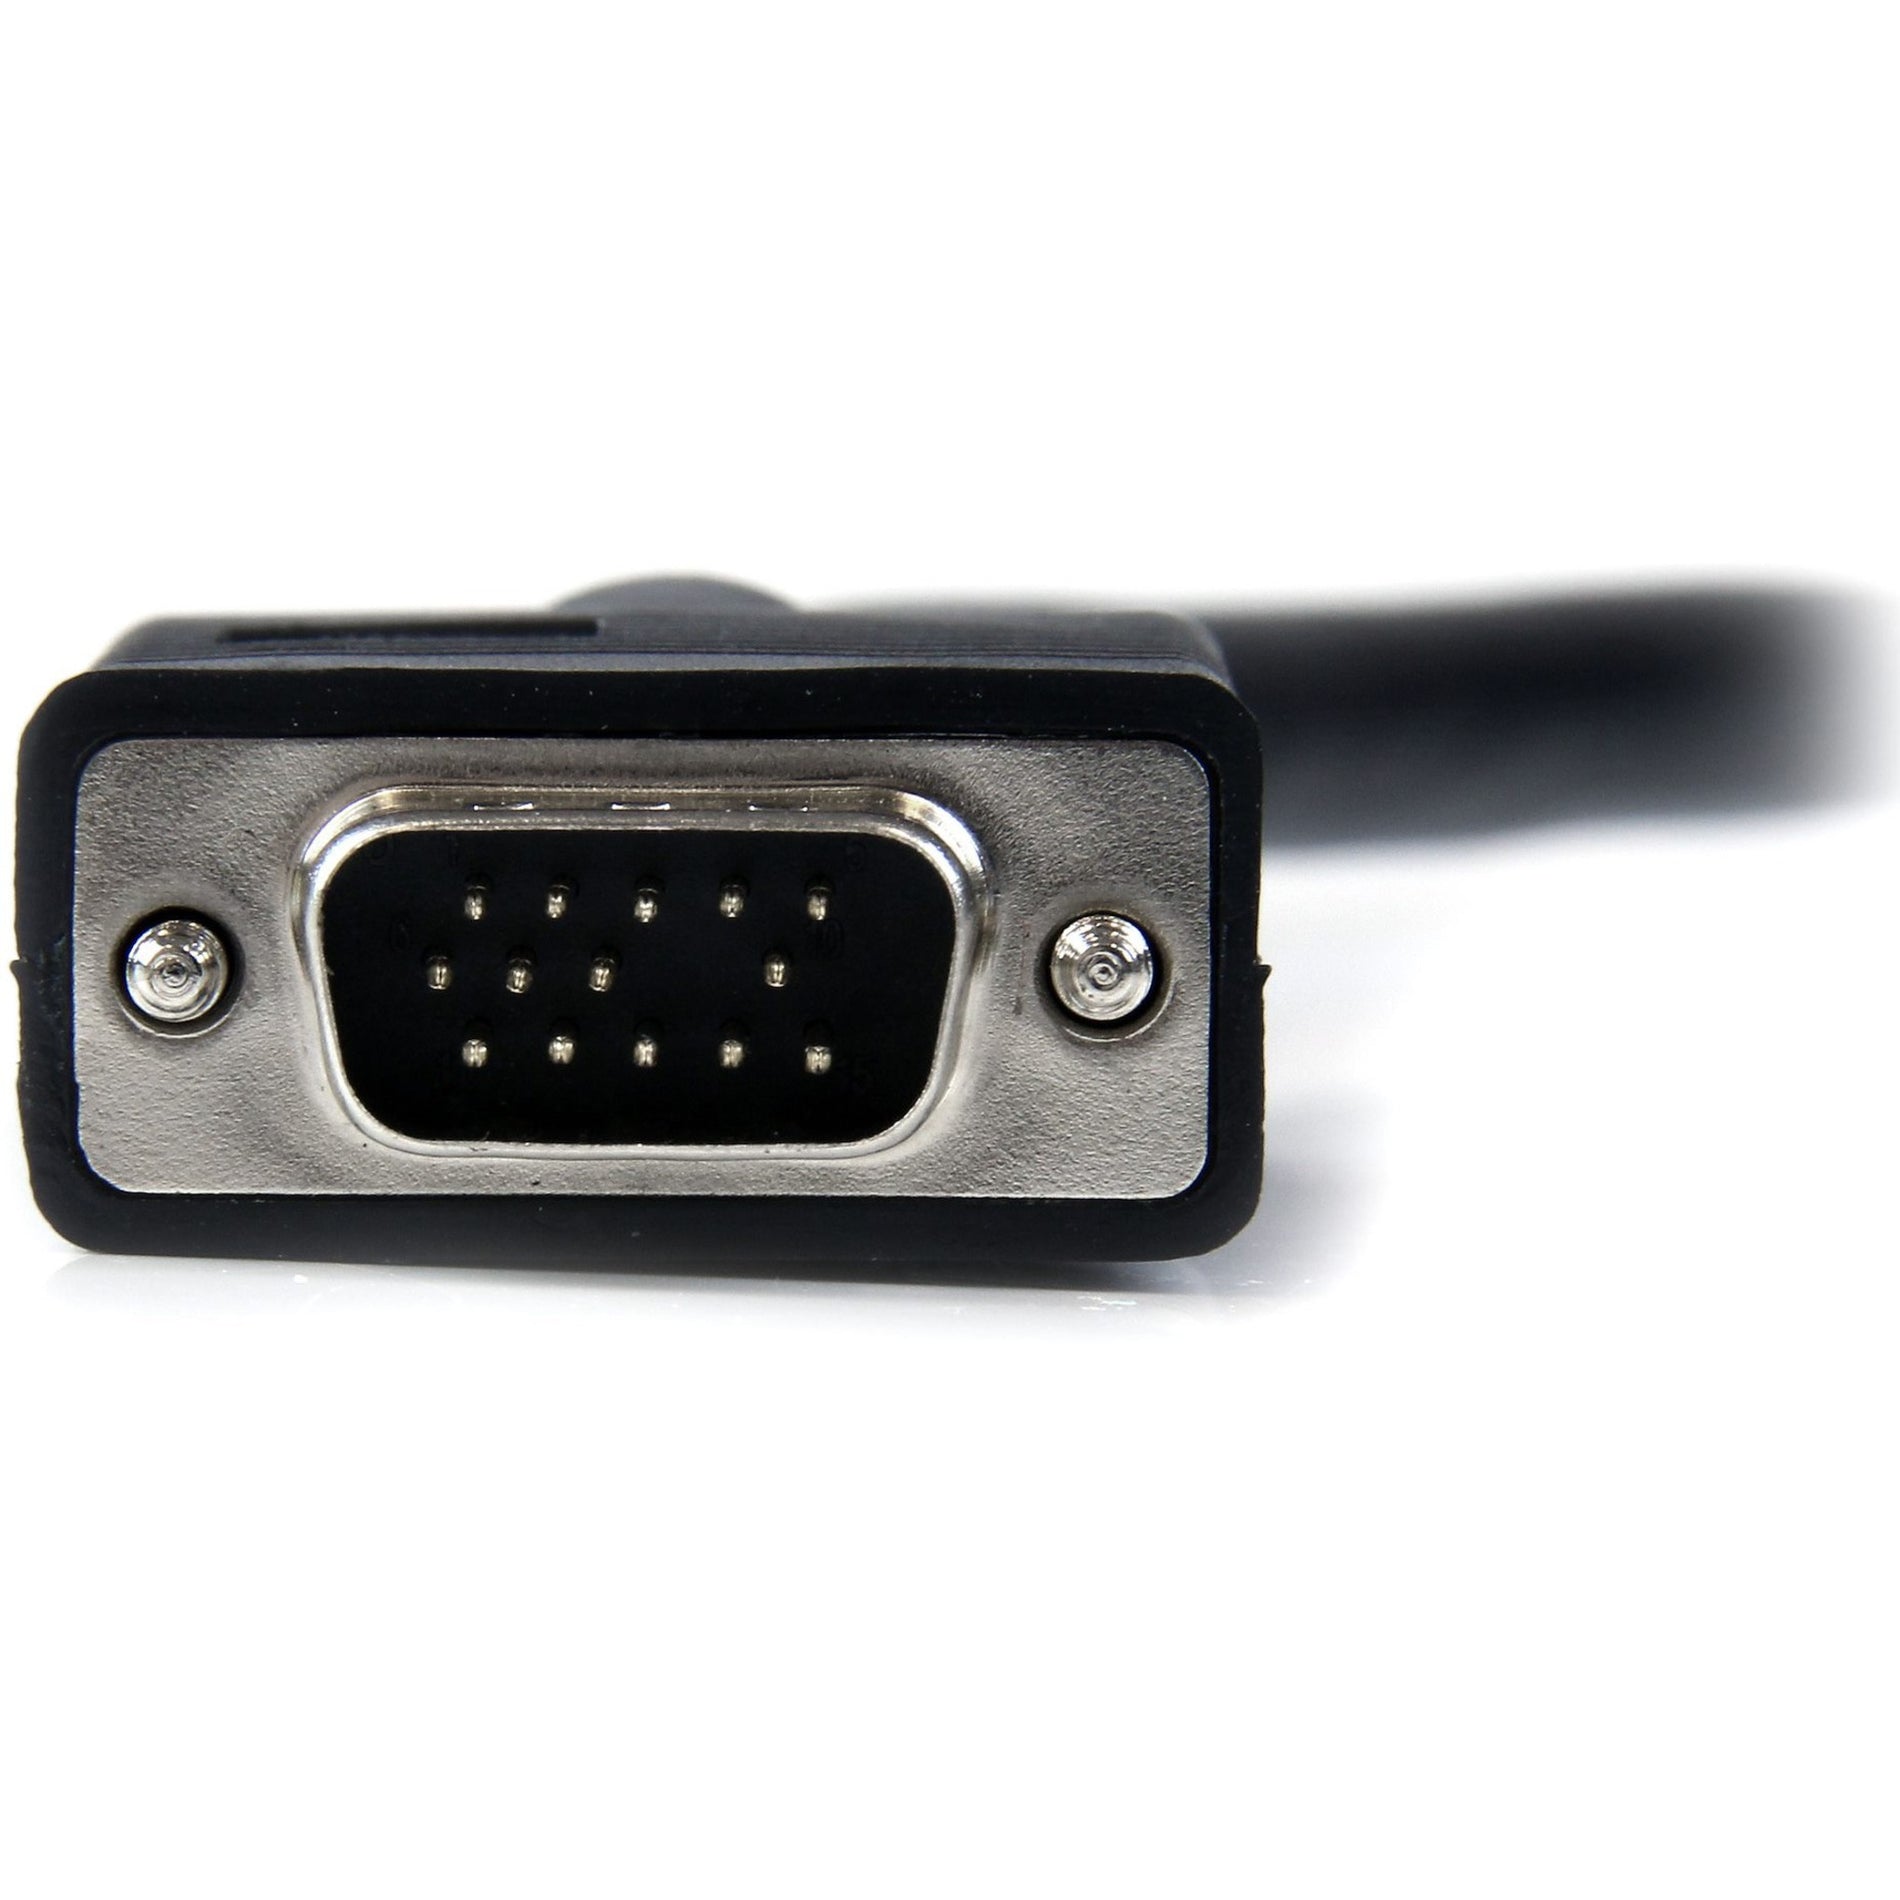 StarTech.com Cable de monitor VGA coaxial MXT101MMH100 100 pies - SVGA de alta resolución moldeado protección EMI perla de ferrita